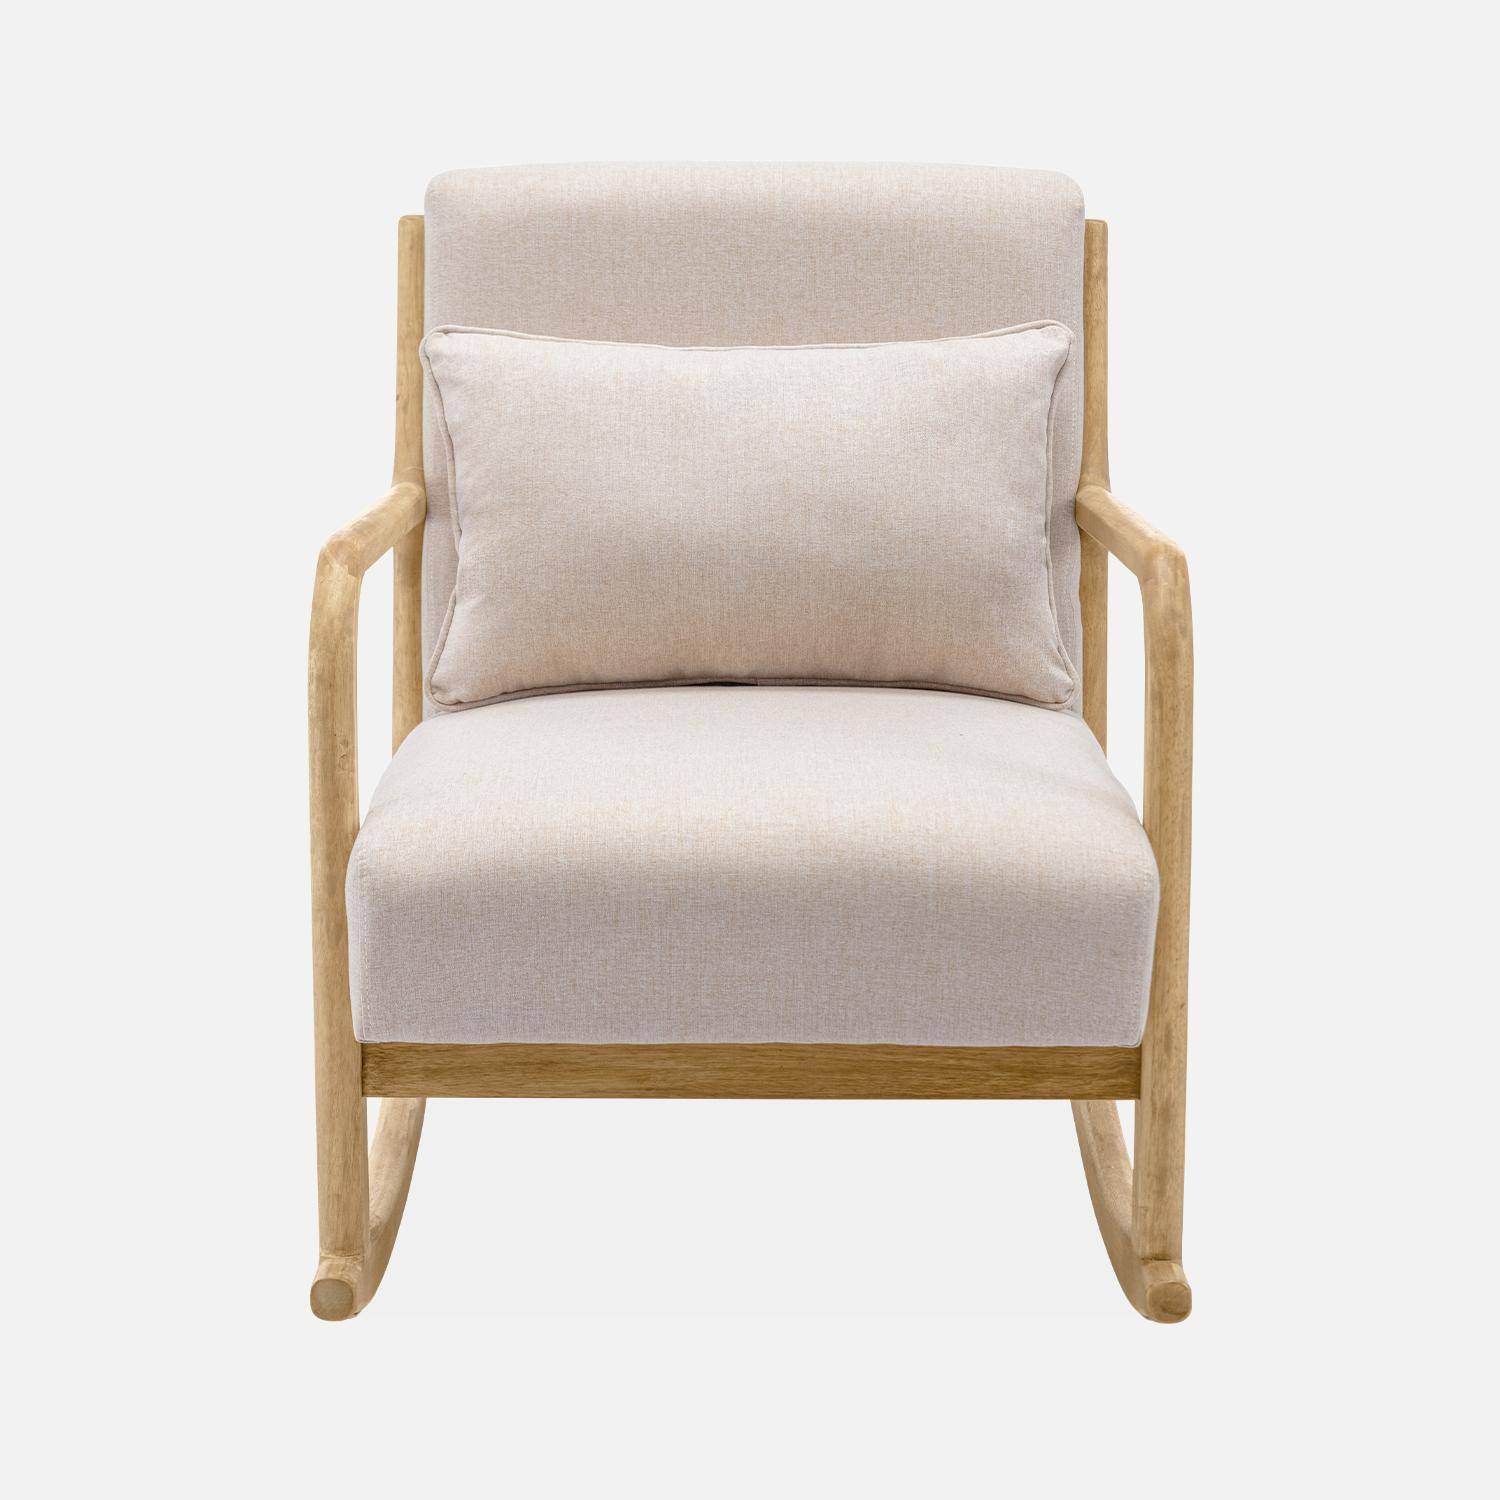 Cadeira de baloiço de design em madeira e tecido, 1 lugar, cadeira de baloiço escandinava, bege Photo4